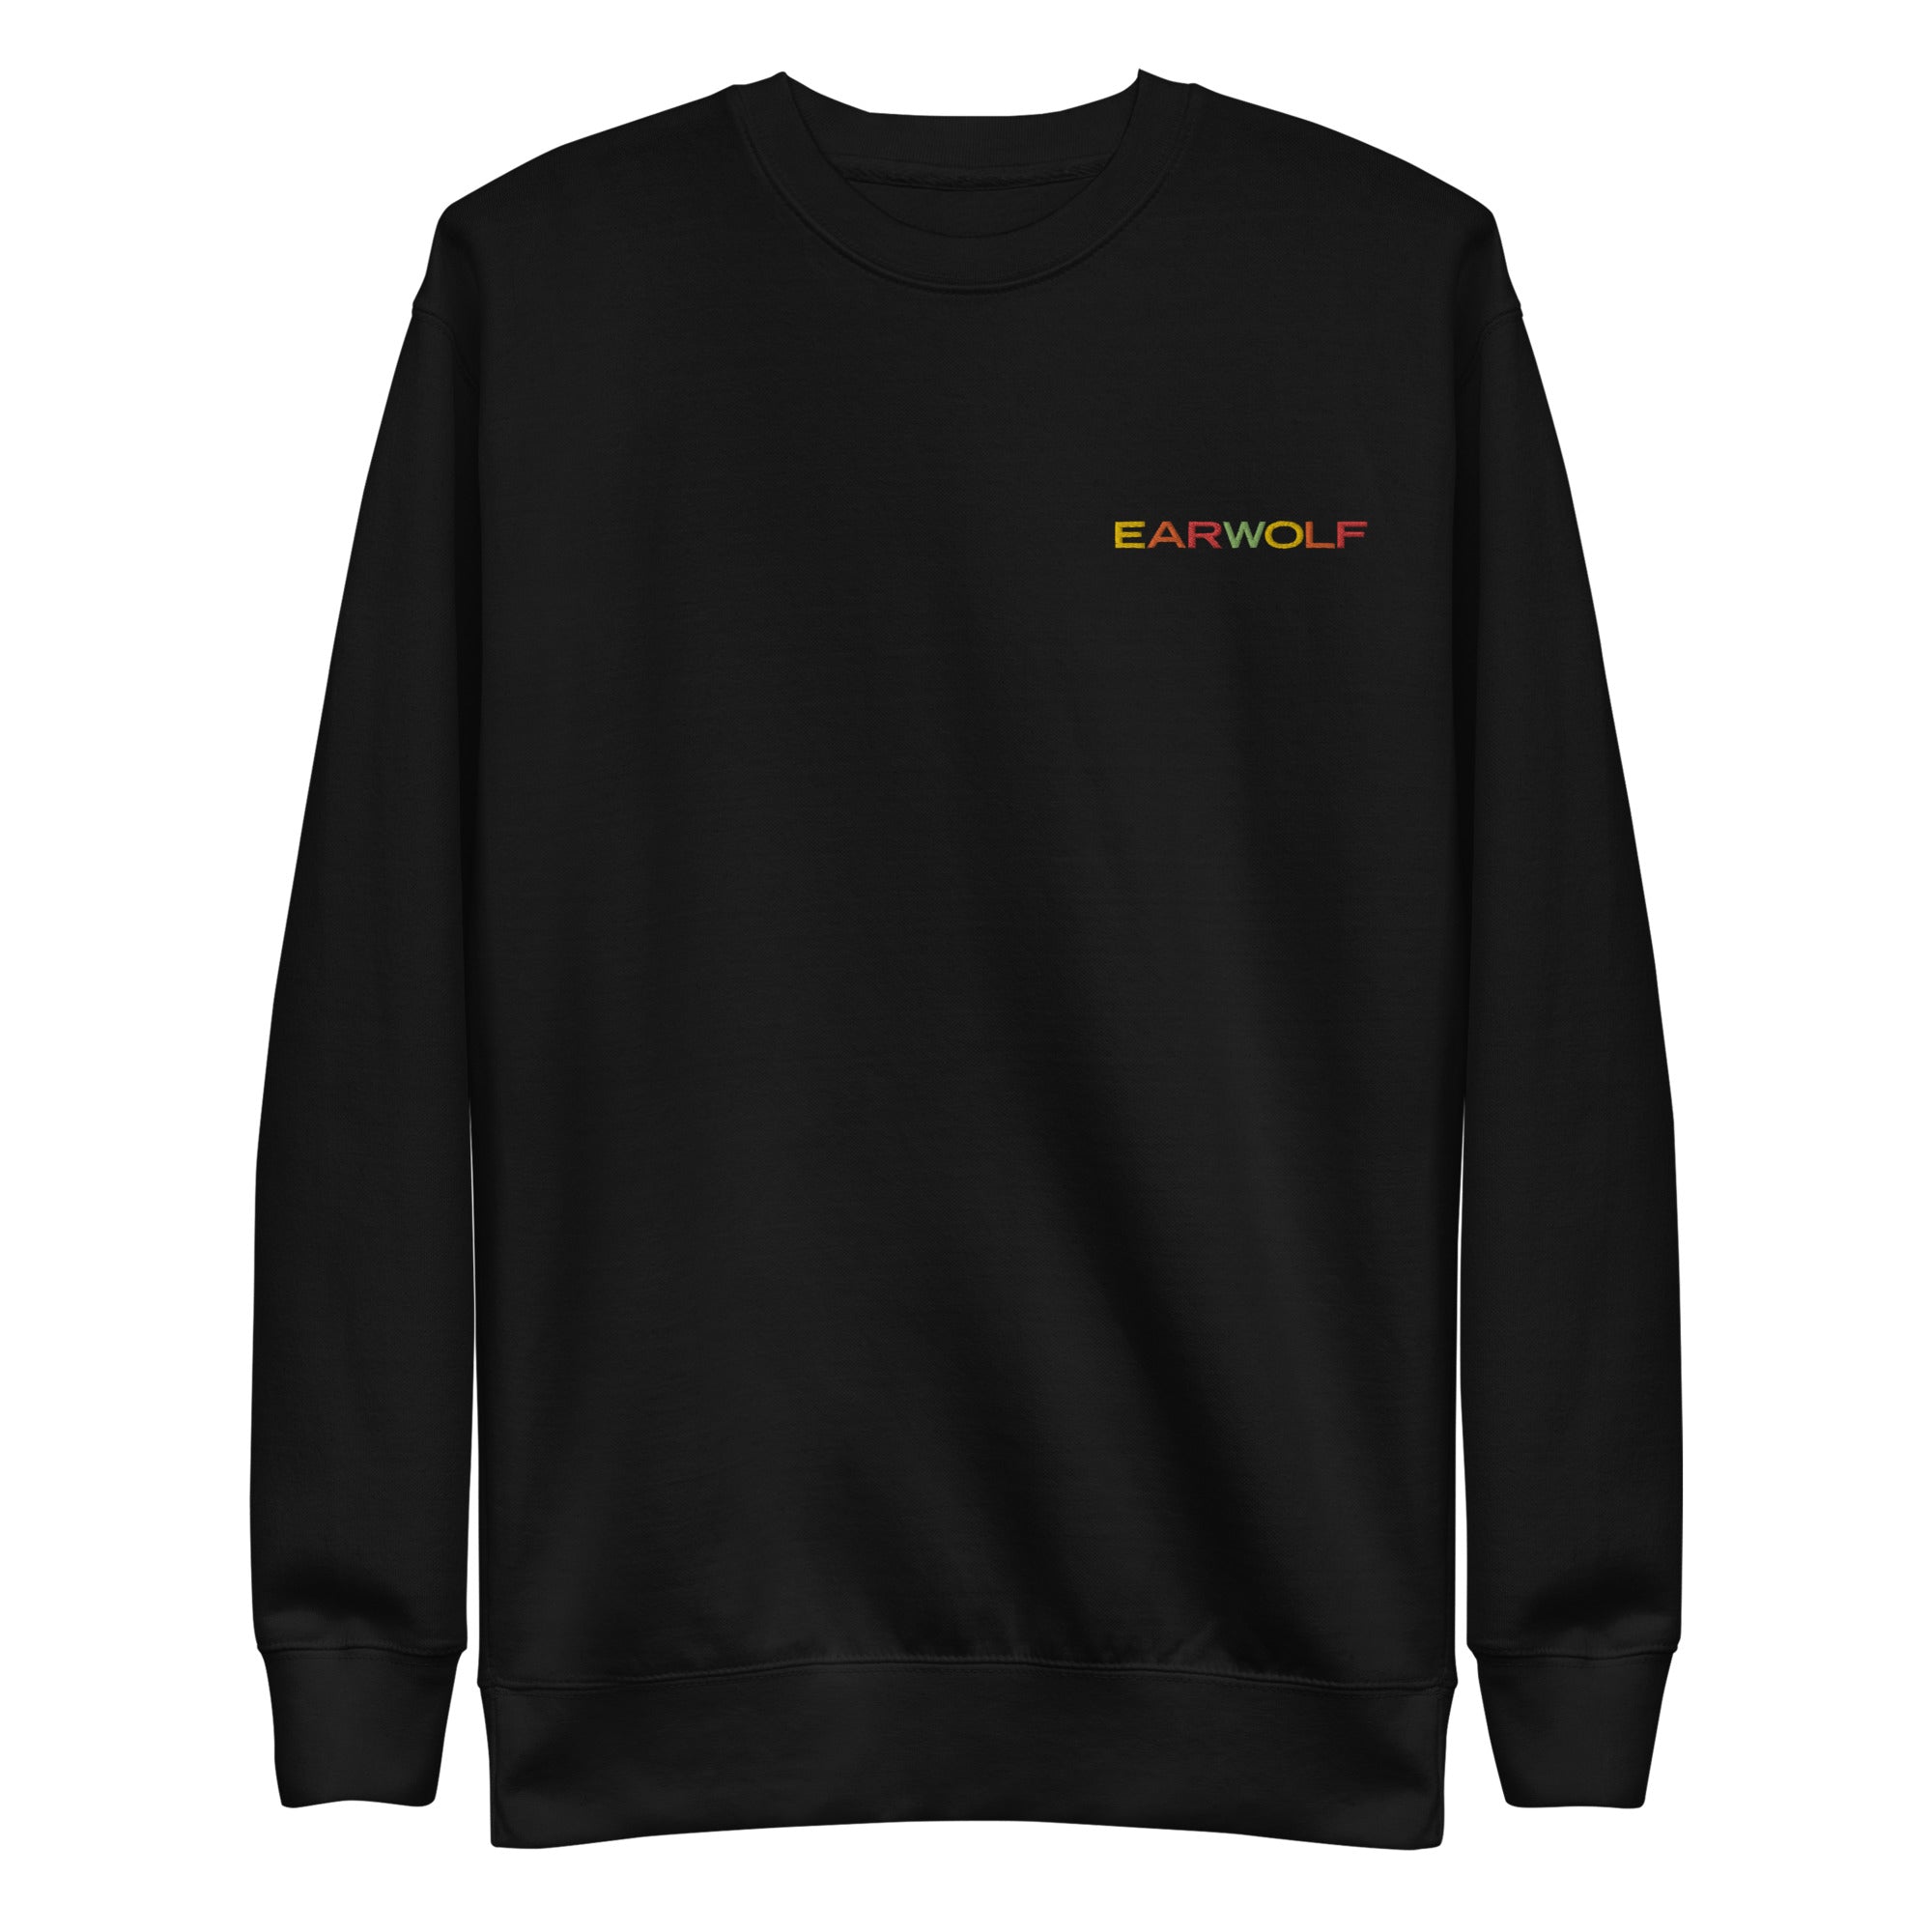 Earwolf: Unisex Premium Sweatshirt